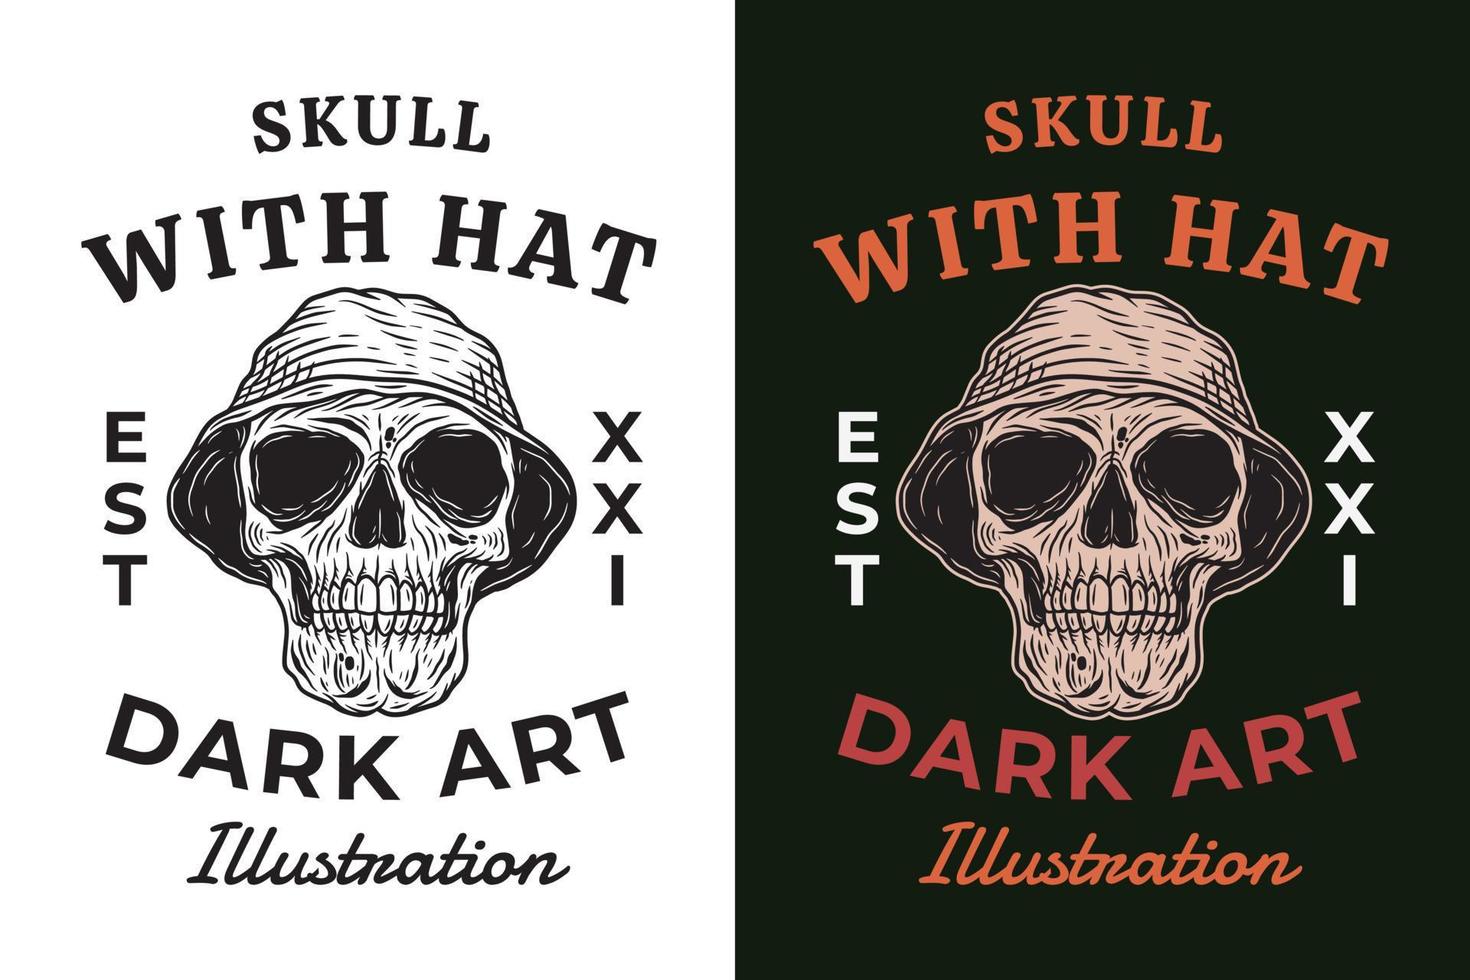 conjunto cráneo con sombrero oscuro ilustración cráneo huesos cabeza dibujado a mano eclosión contorno símbolo tatuaje mercancía camiseta merch vintage vector